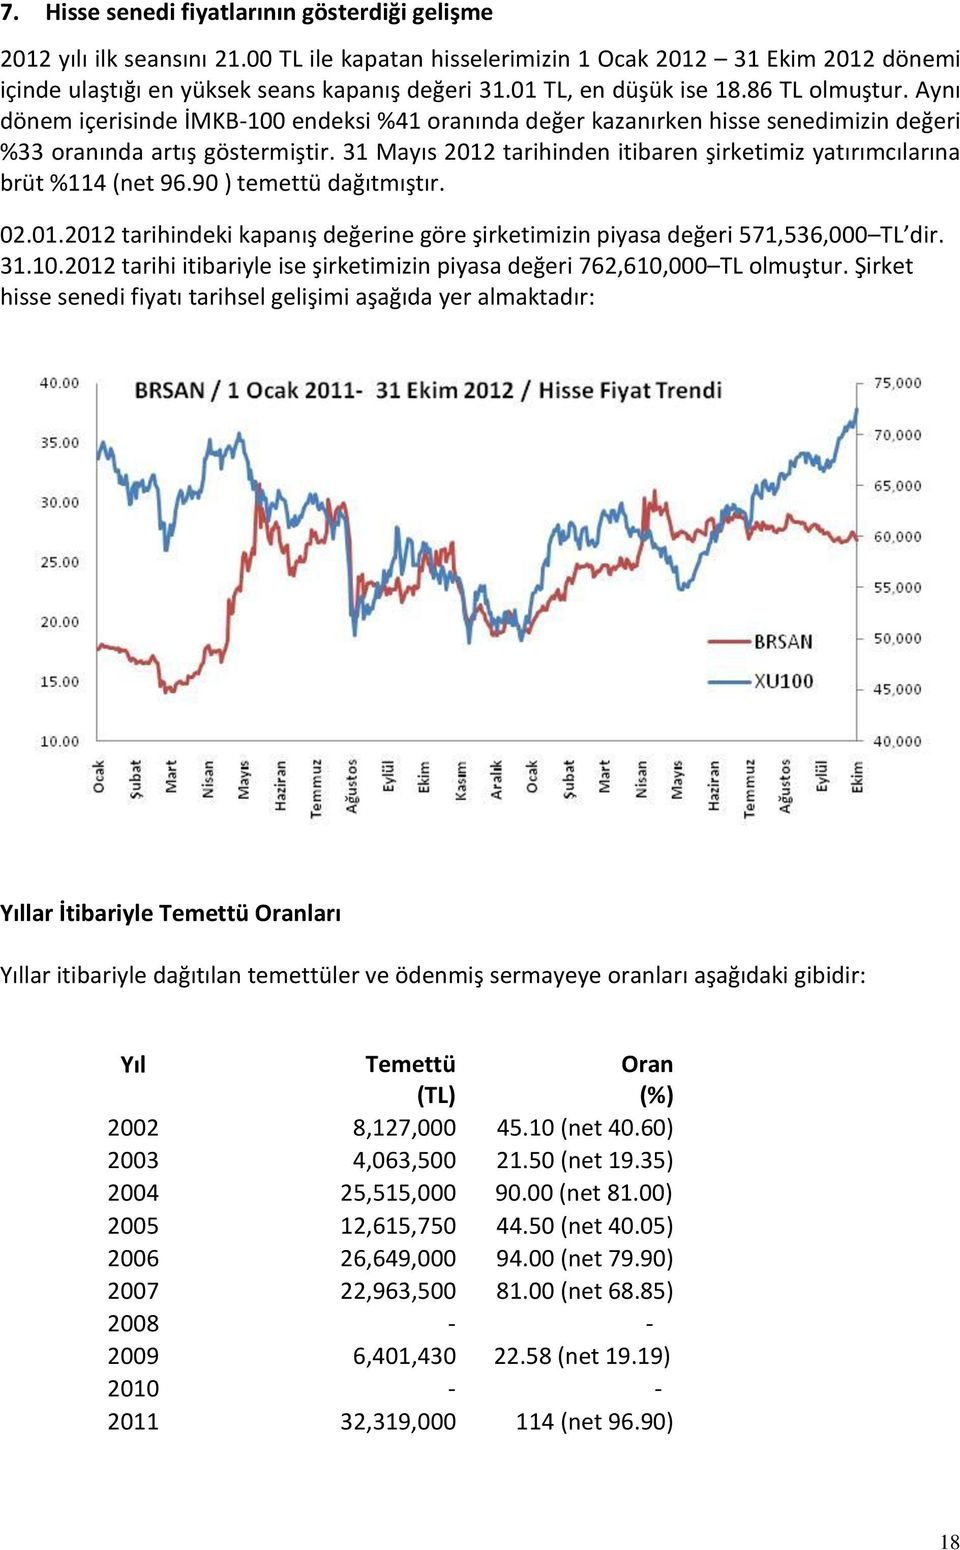 31 Mayıs 2012 tarihinden itibaren şirketimiz yatırımcılarına brüt %114 (net 96.90 ) temettü dağıtmıştır. 02.01.2012 tarihindeki kapanış değerine göre şirketimizin piyasa değeri 571,536,000 TL dir. 31.